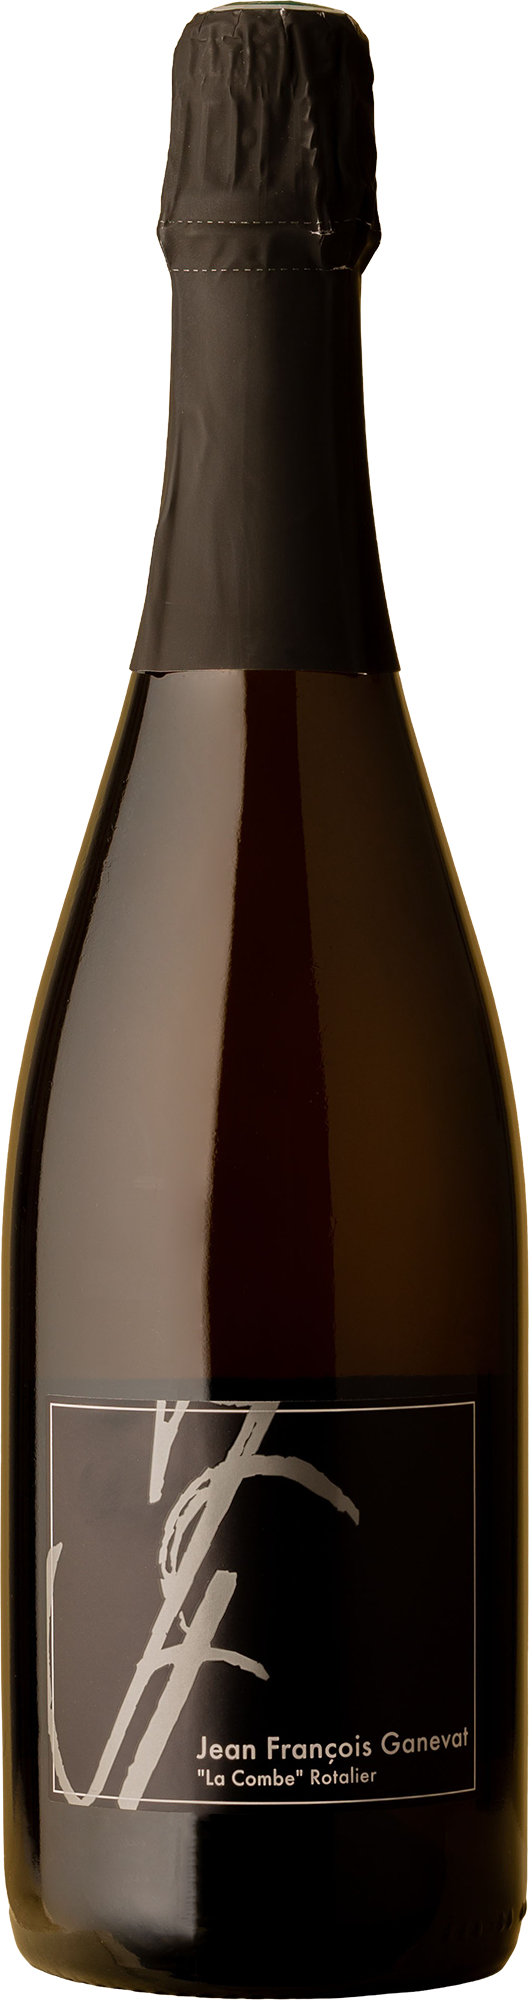 Jean-François Ganevat - Crémant Du Jura NV Sparkling Wine